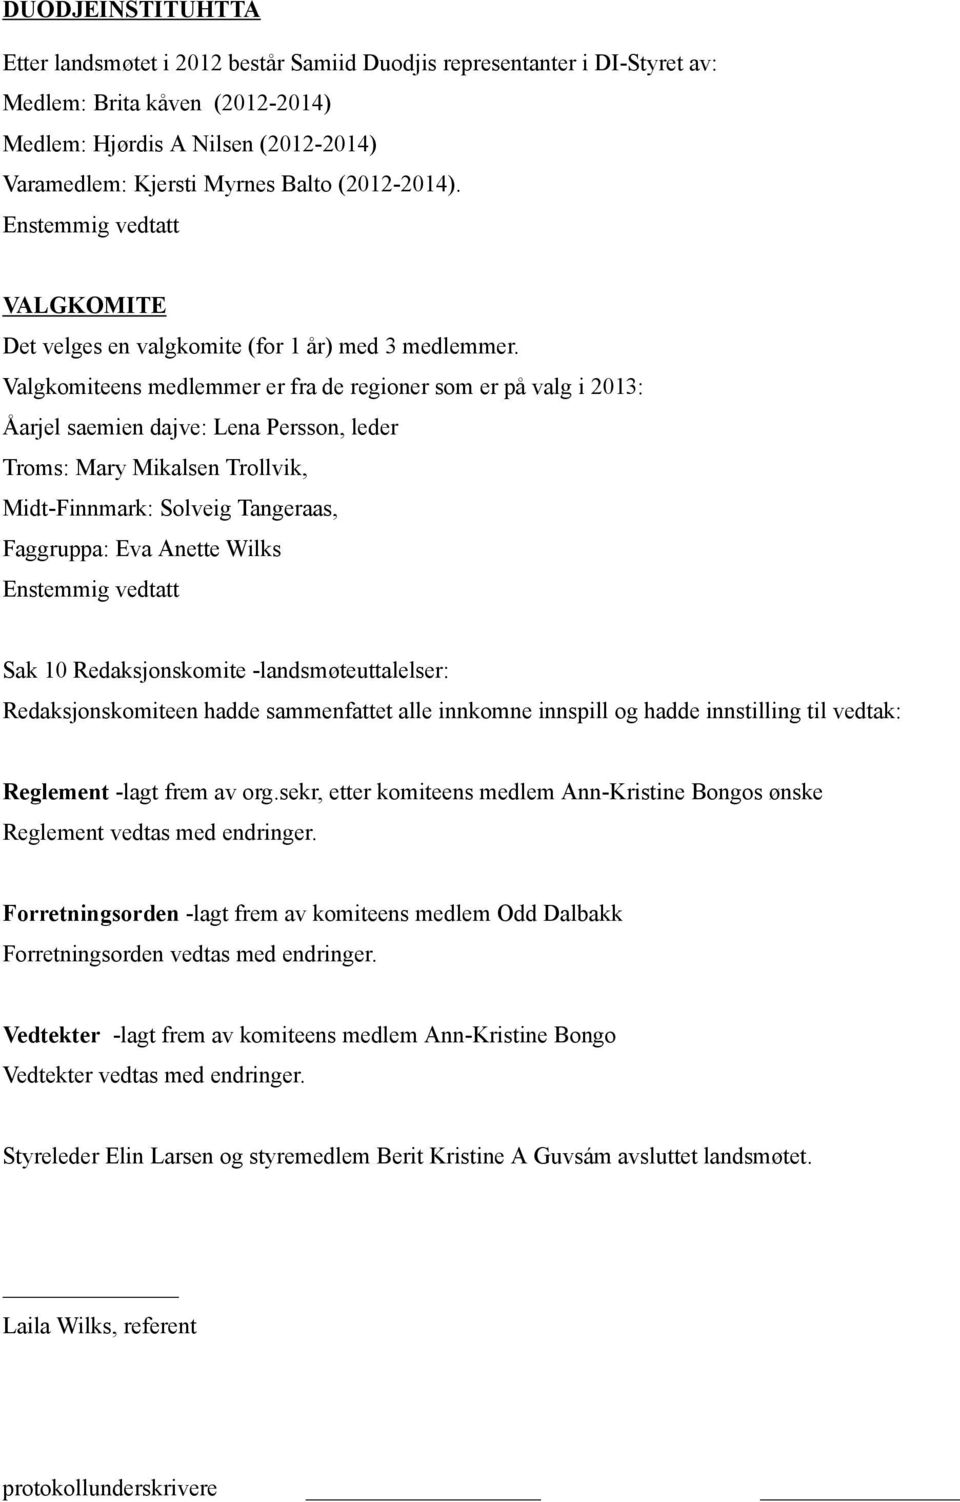 Valgkomiteens medlemmer er fra de regioner som er på valg i 2013: Åarjel saemien dajve: Lena Persson, leder Troms: Mary Mikalsen Trollvik, Midt-Finnmark: Solveig Tangeraas, Faggruppa: Eva Anette